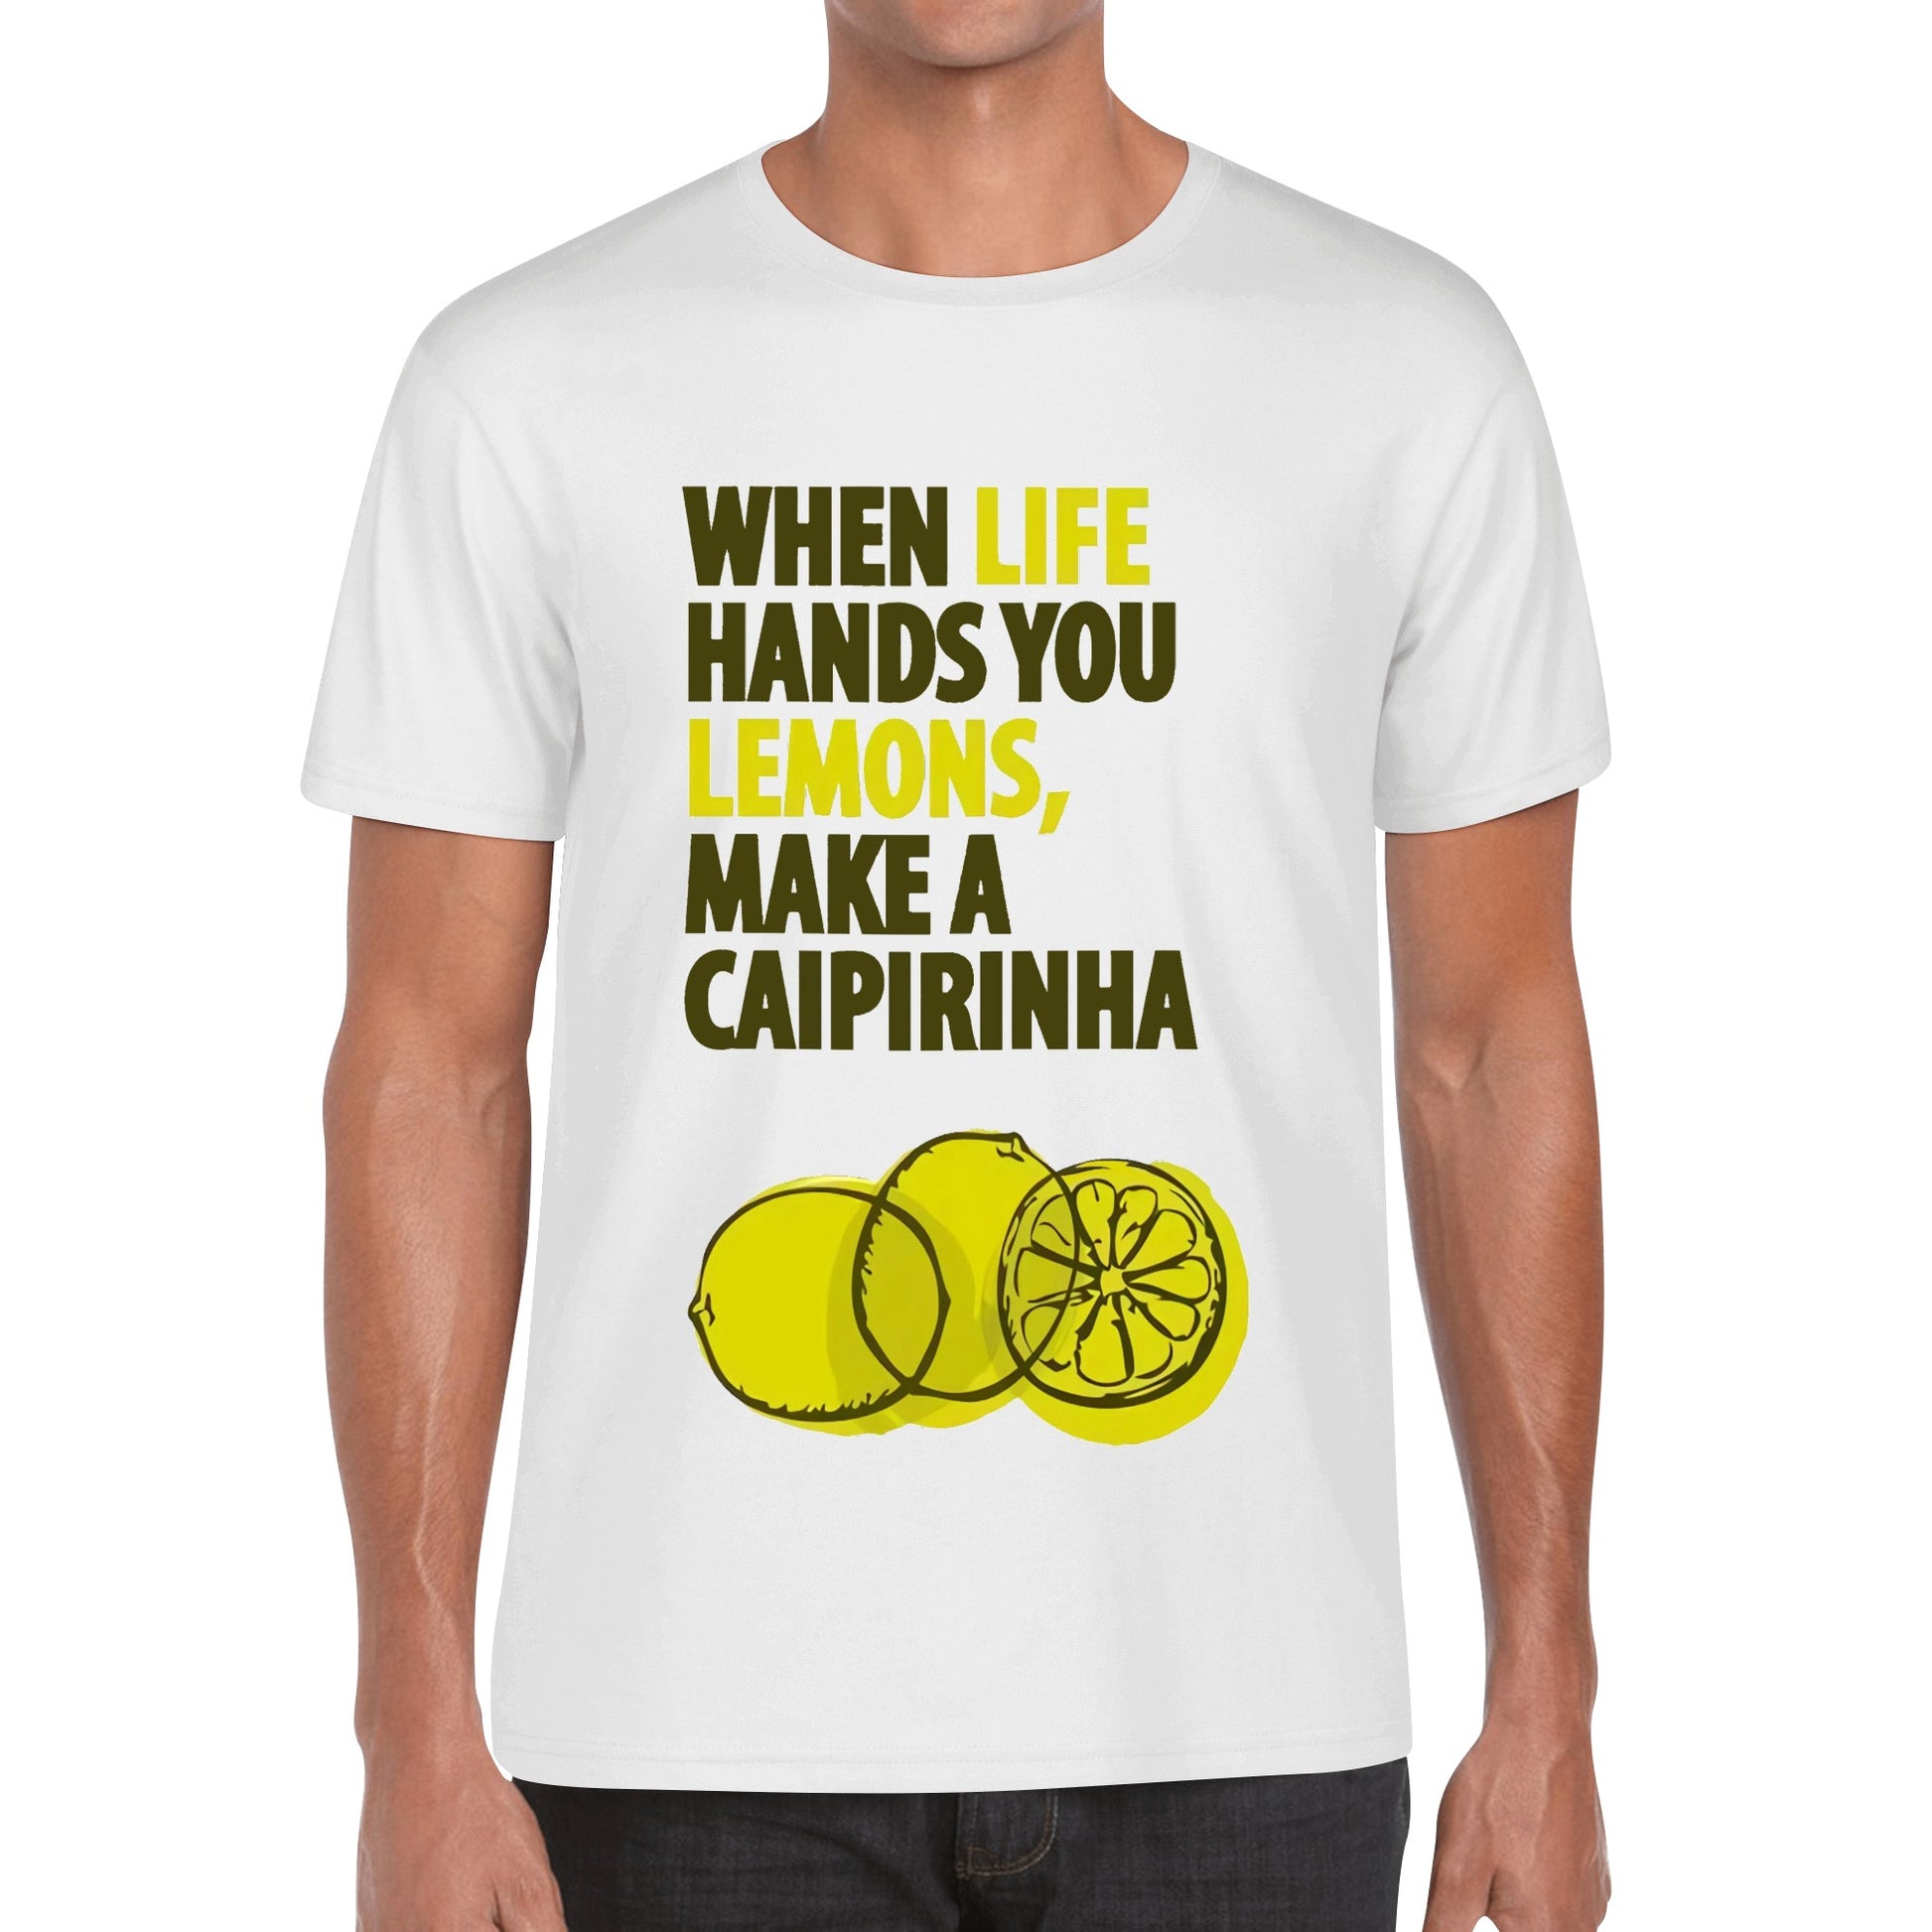 T-Shirt when life hands you lemons, make a caipirinha DrinkandArt